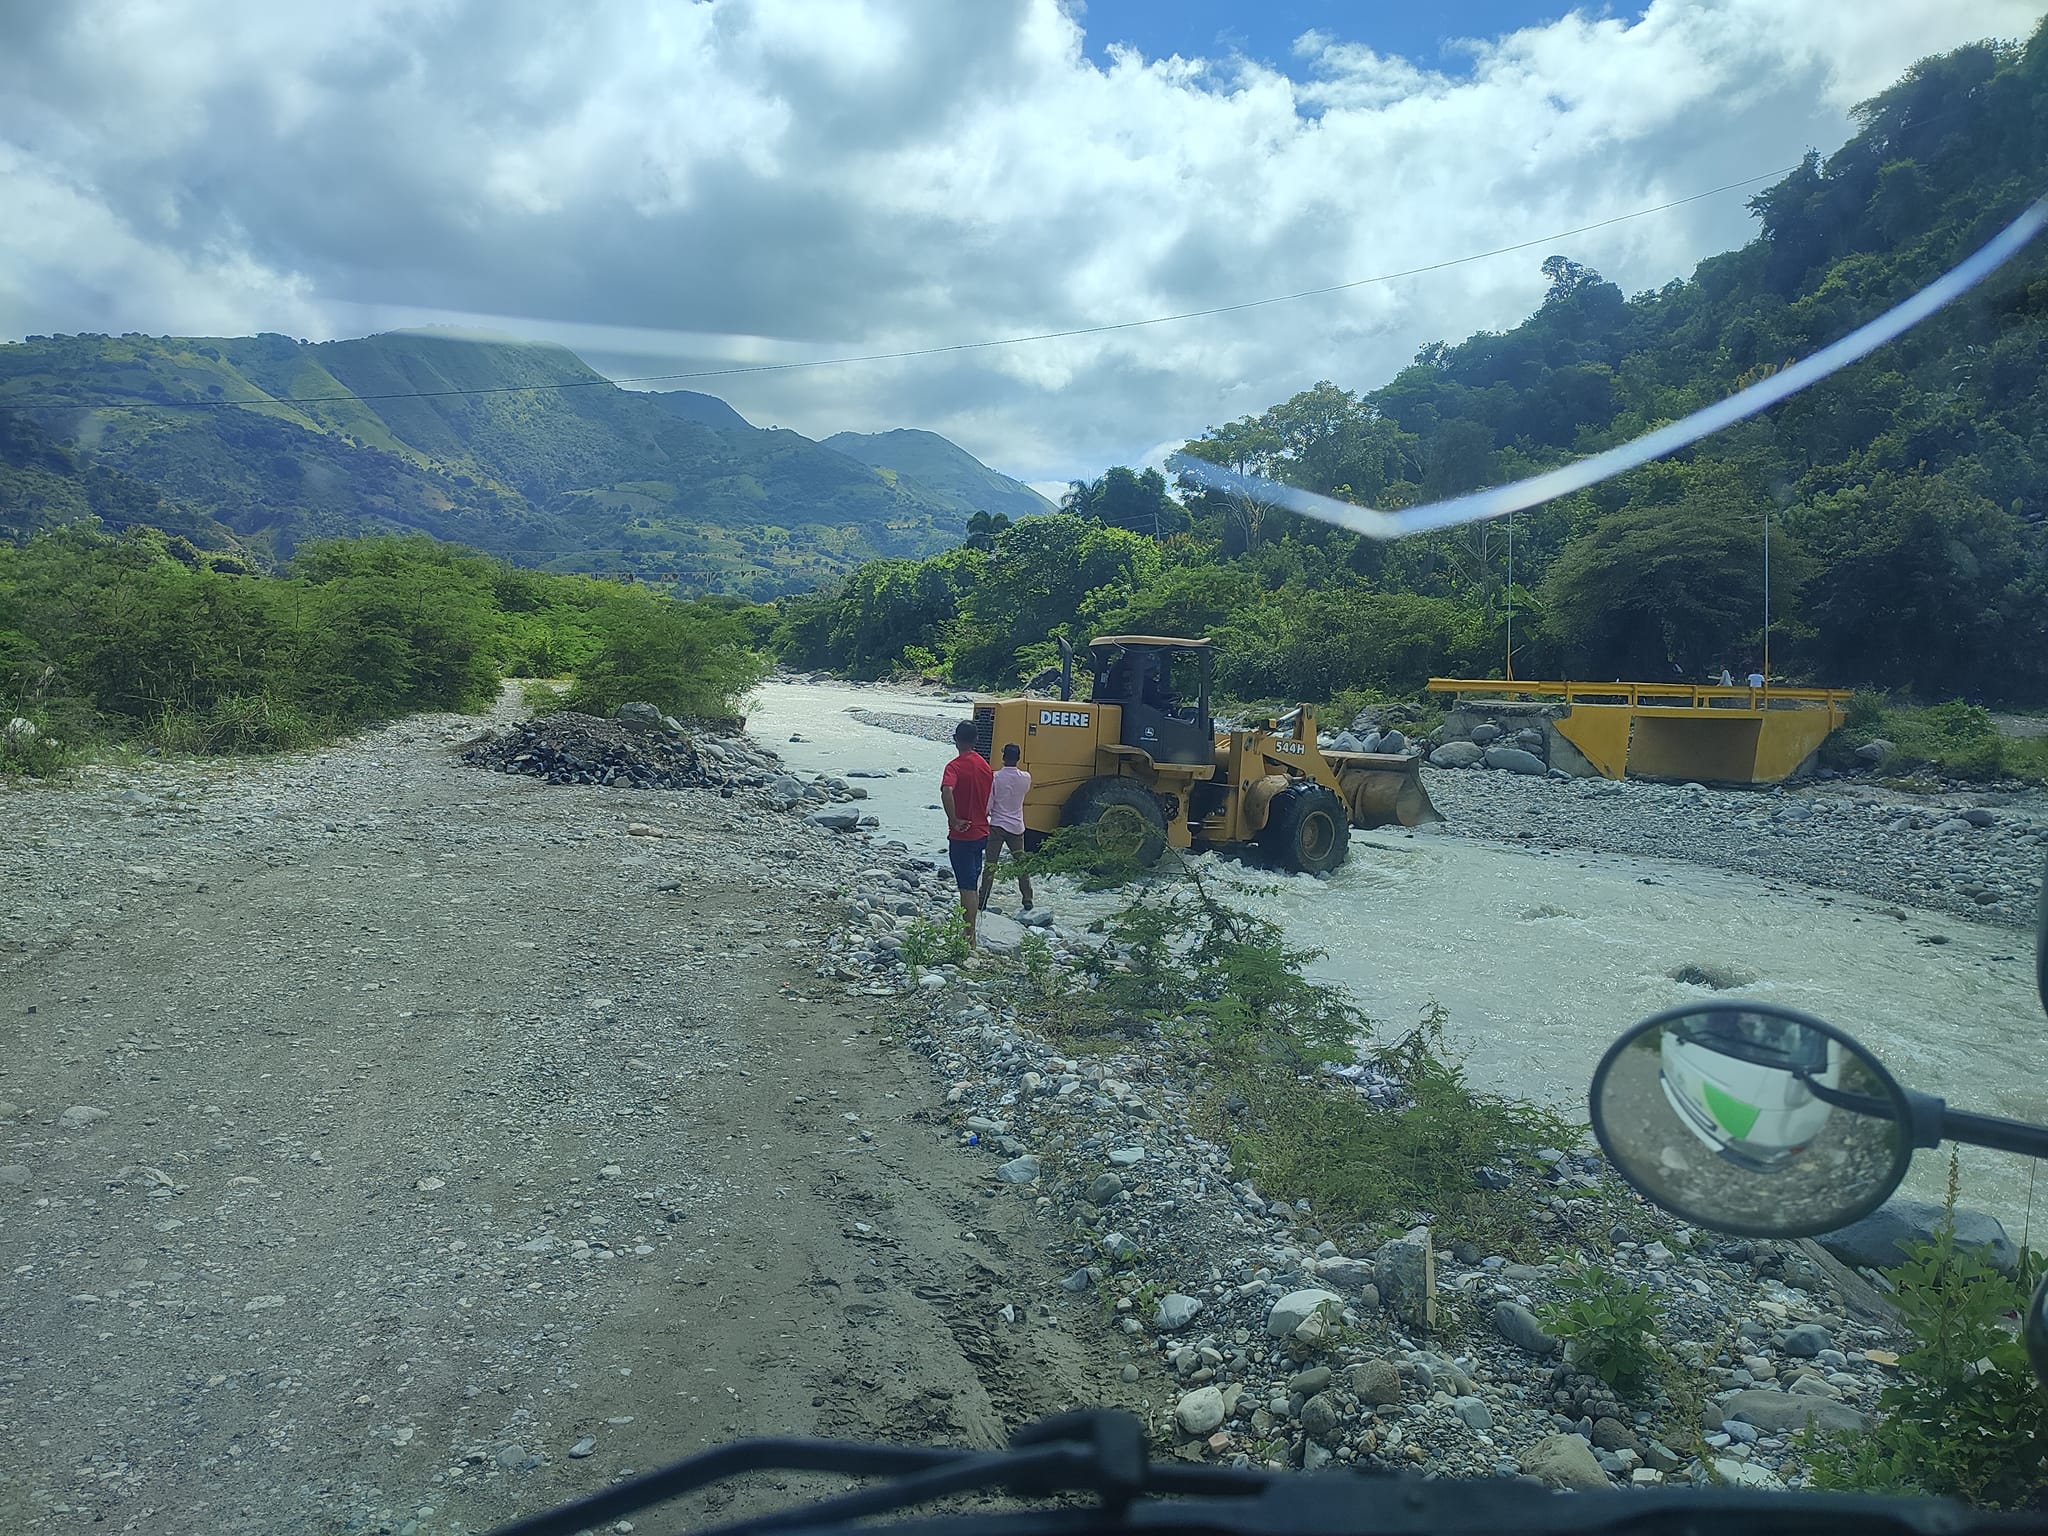 El Ayuntamiento de Guayabal, Azua, inicia la rehabilitación del paso en el río Las Cuevas, conectando la comunidad de Arroyo Corozo hasta Las Guamas